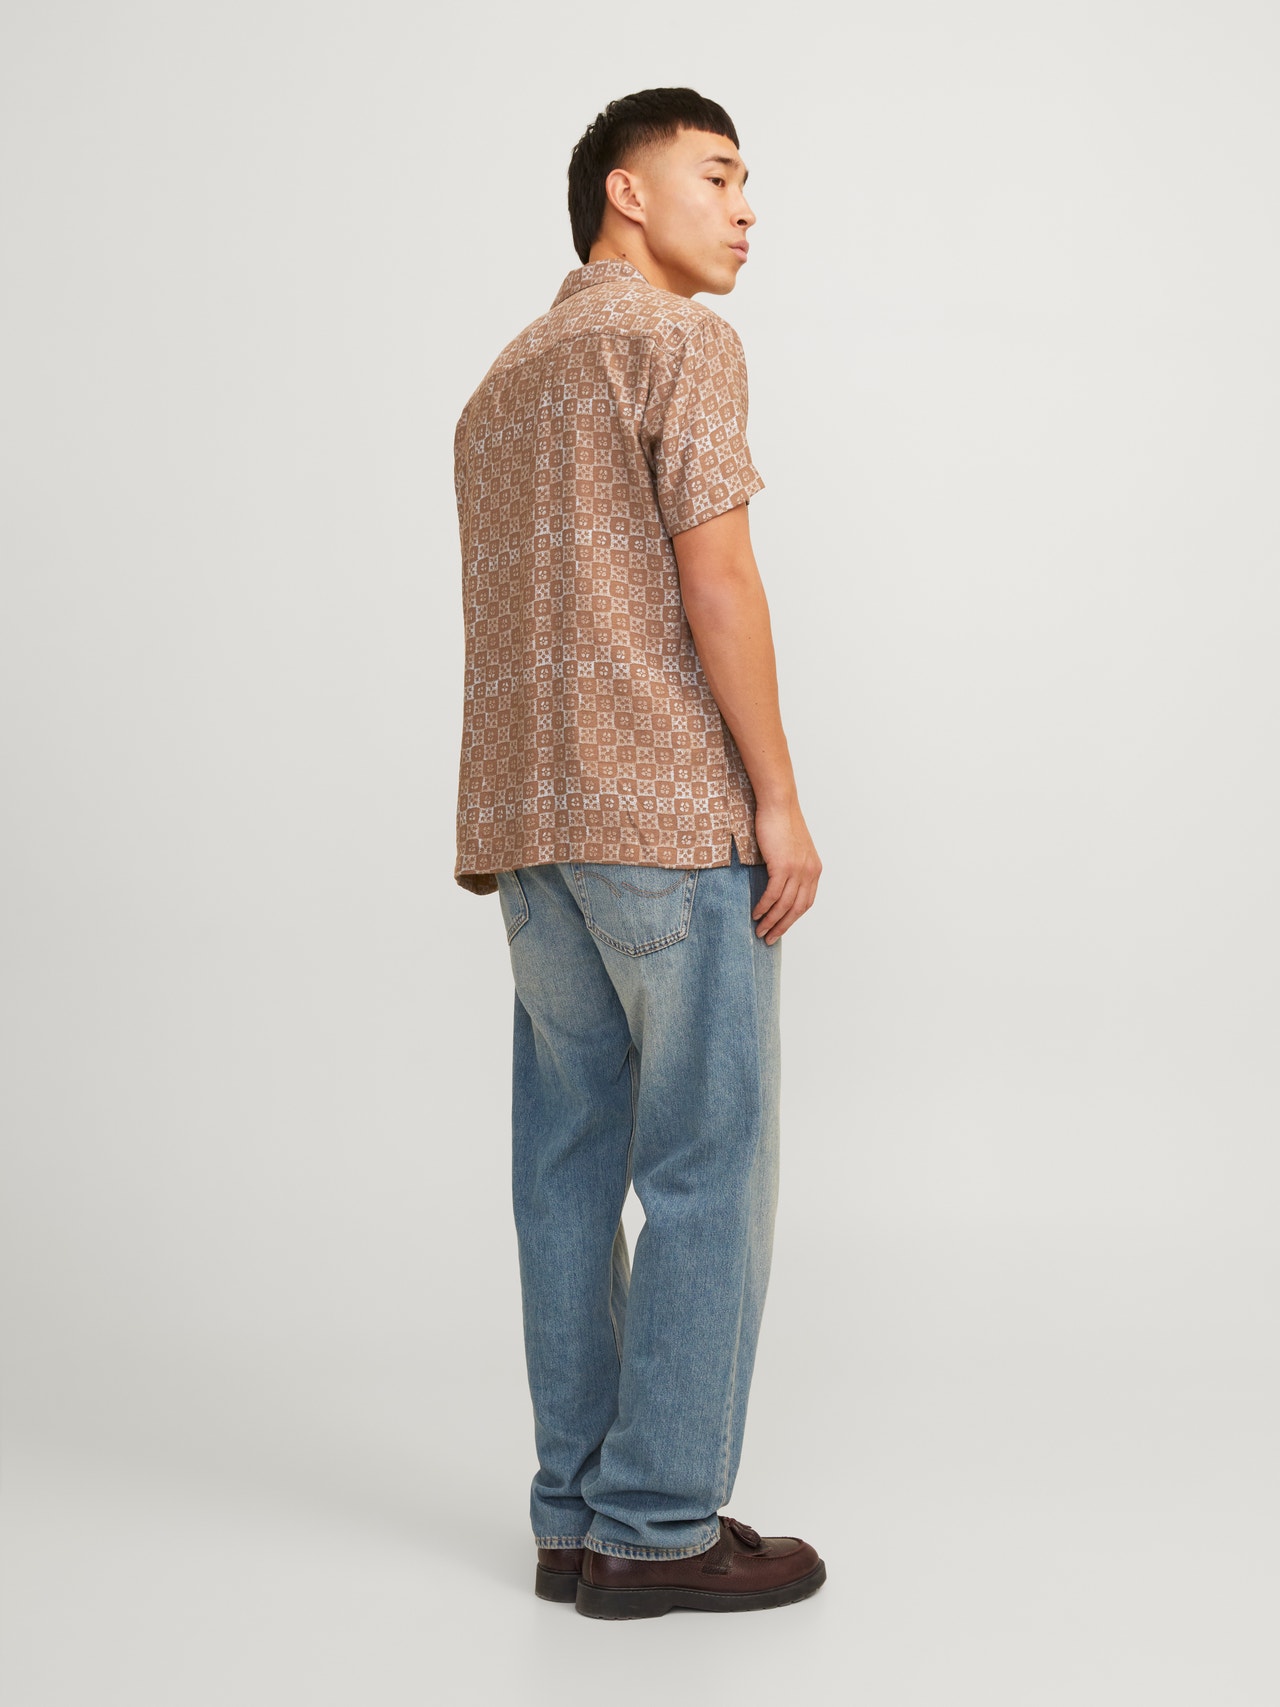 Jack & Jones Comfort Fit Shirt -Cub - 12255172